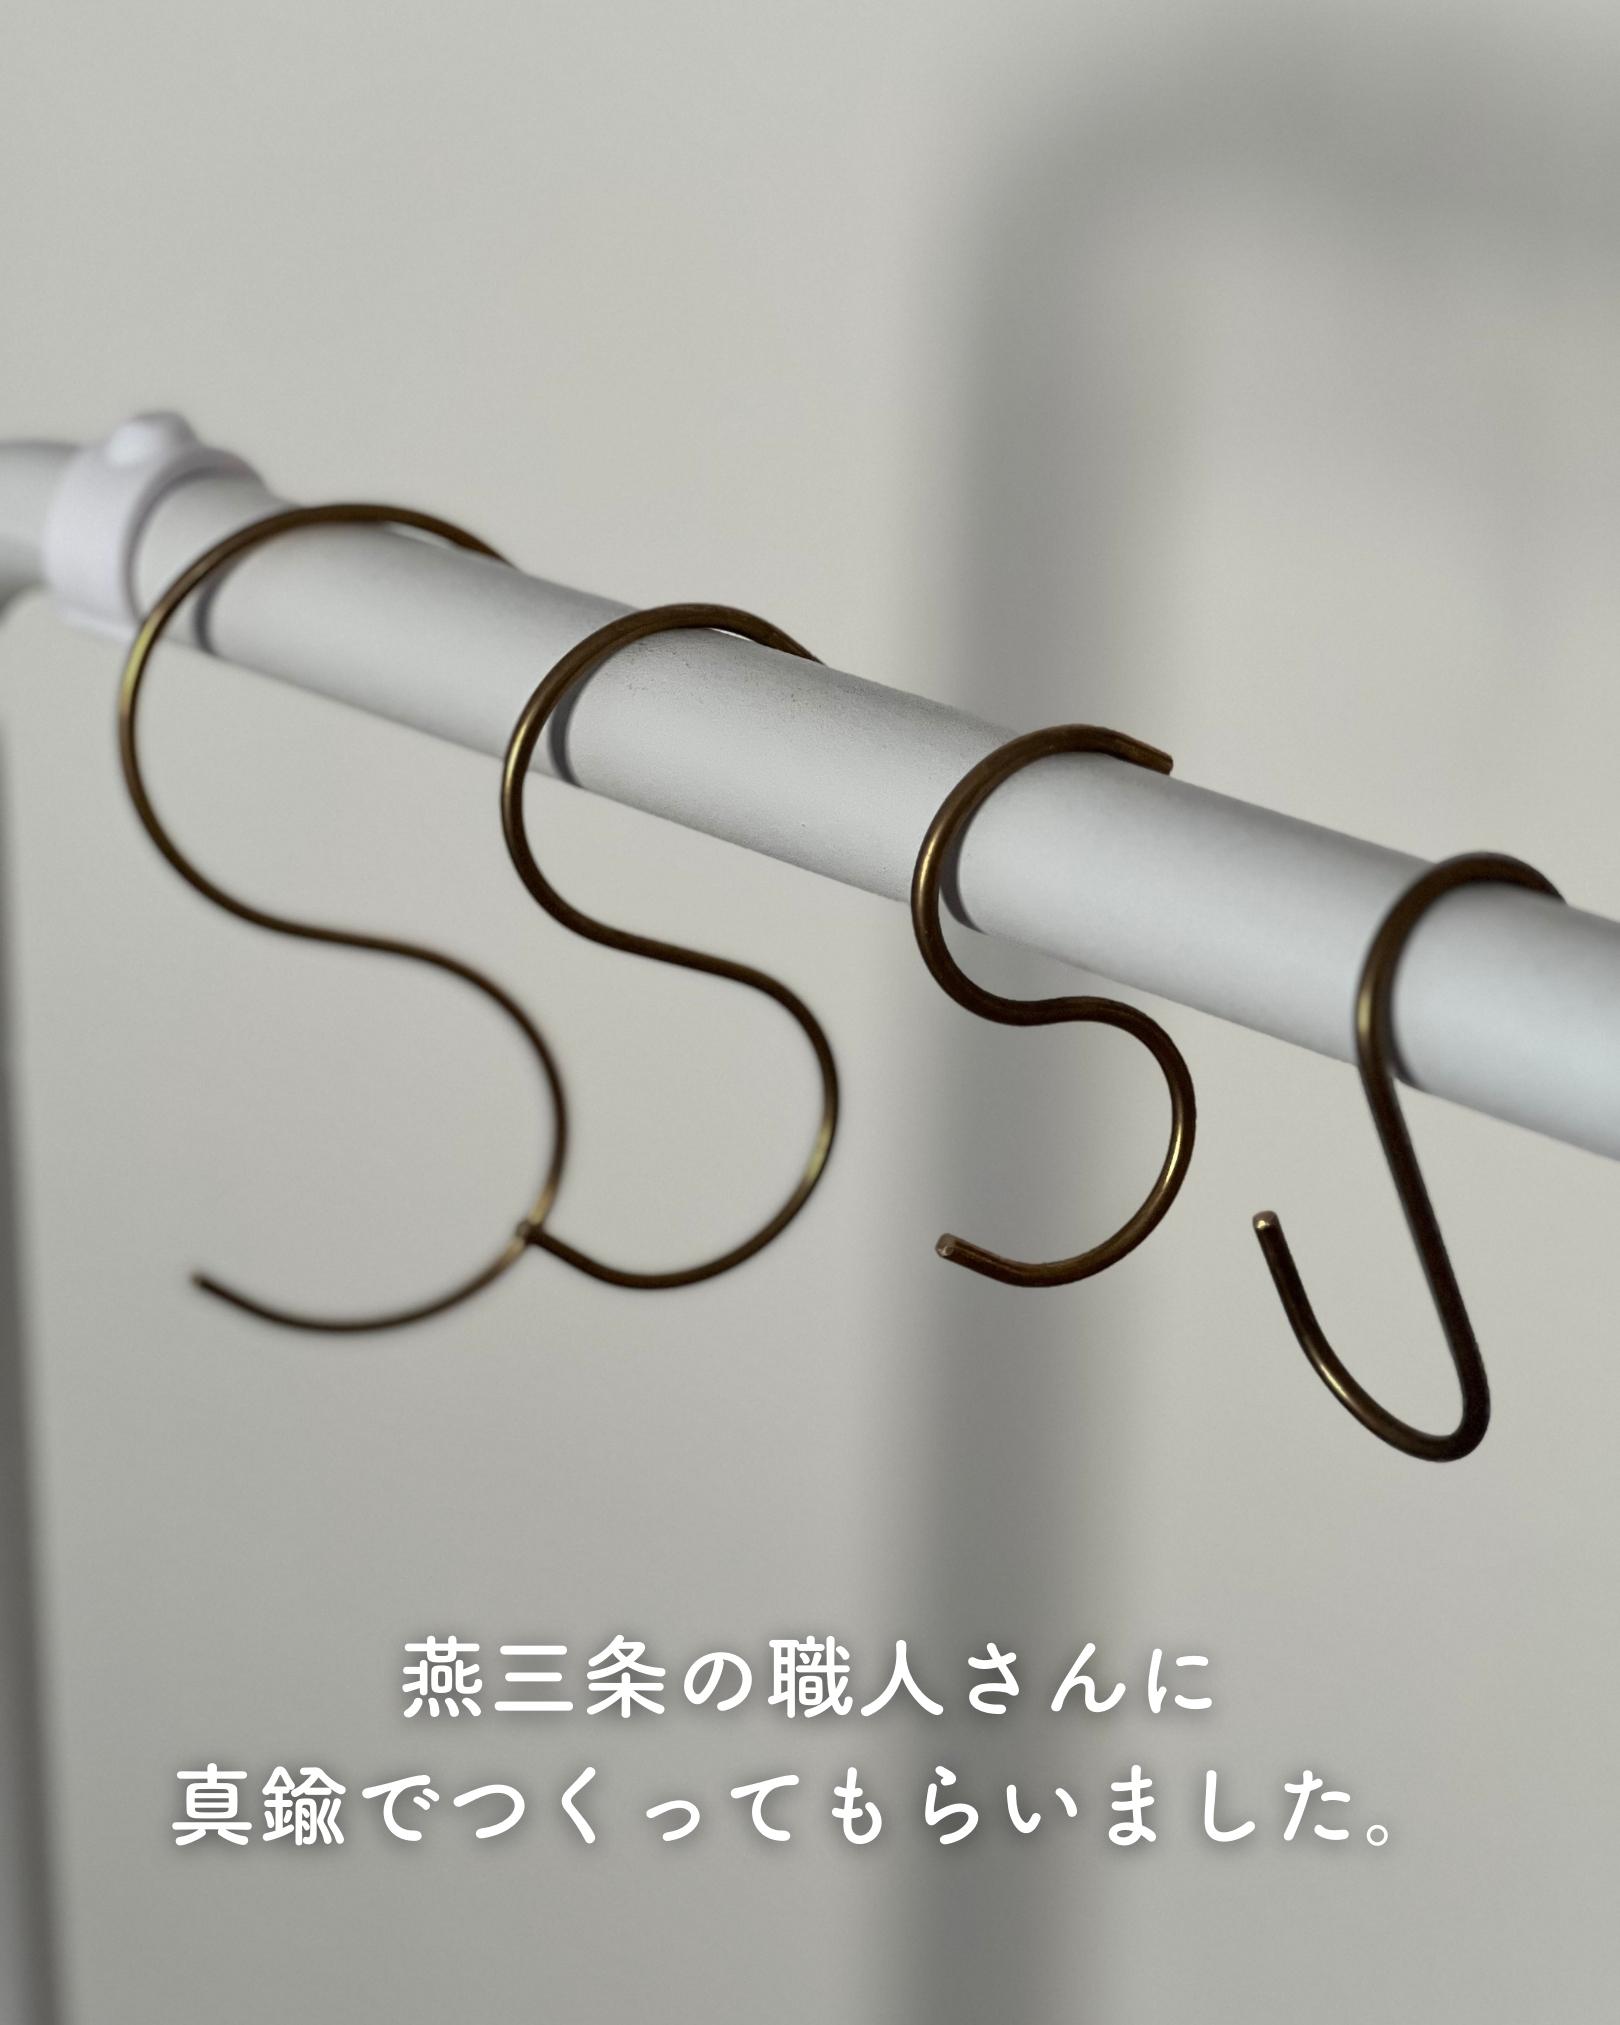 真鍮フック S ひねり 2個組 約3.5×7cm 日本製 燕三条 ビーワーススタイル ※メール便